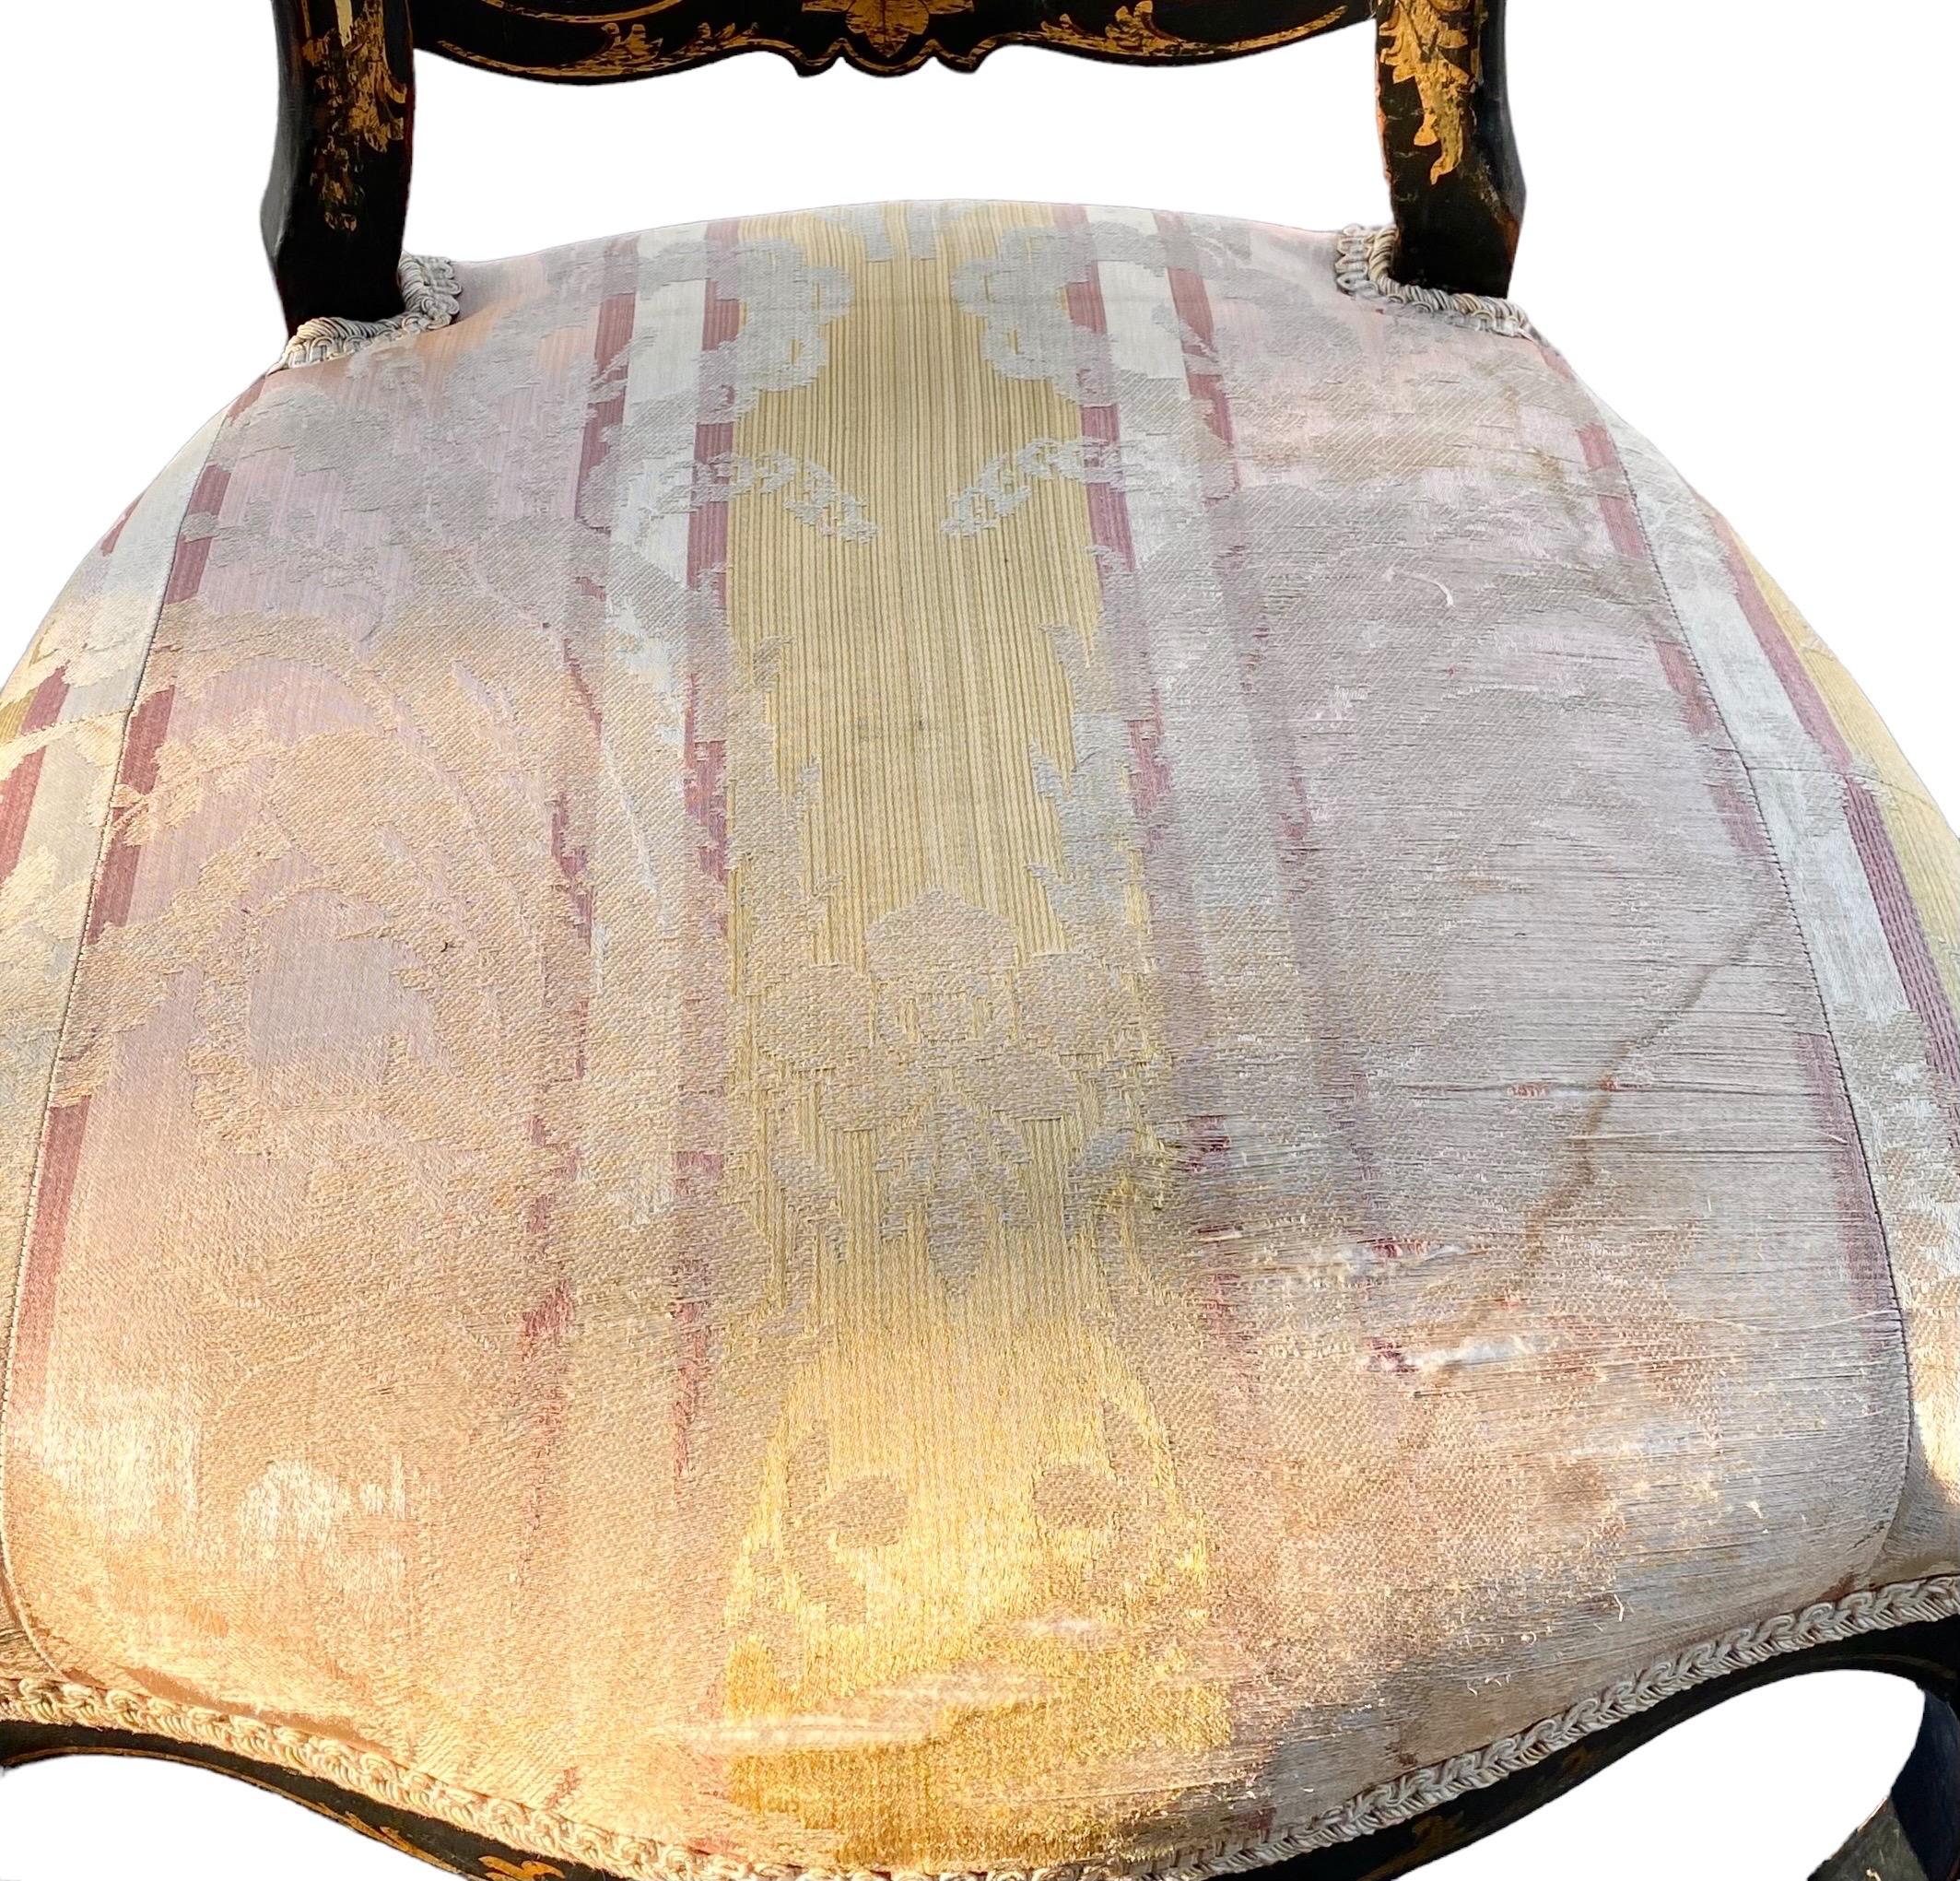 Chaise chauffeuse d'époque Napoléon III à motifs floraux et de volutes peints à la main, vers 1848-1860. 
La chaise chauffeuse était une chaise qui s'asseyait bas pour être près de la chaleur du feu en hiver.
33